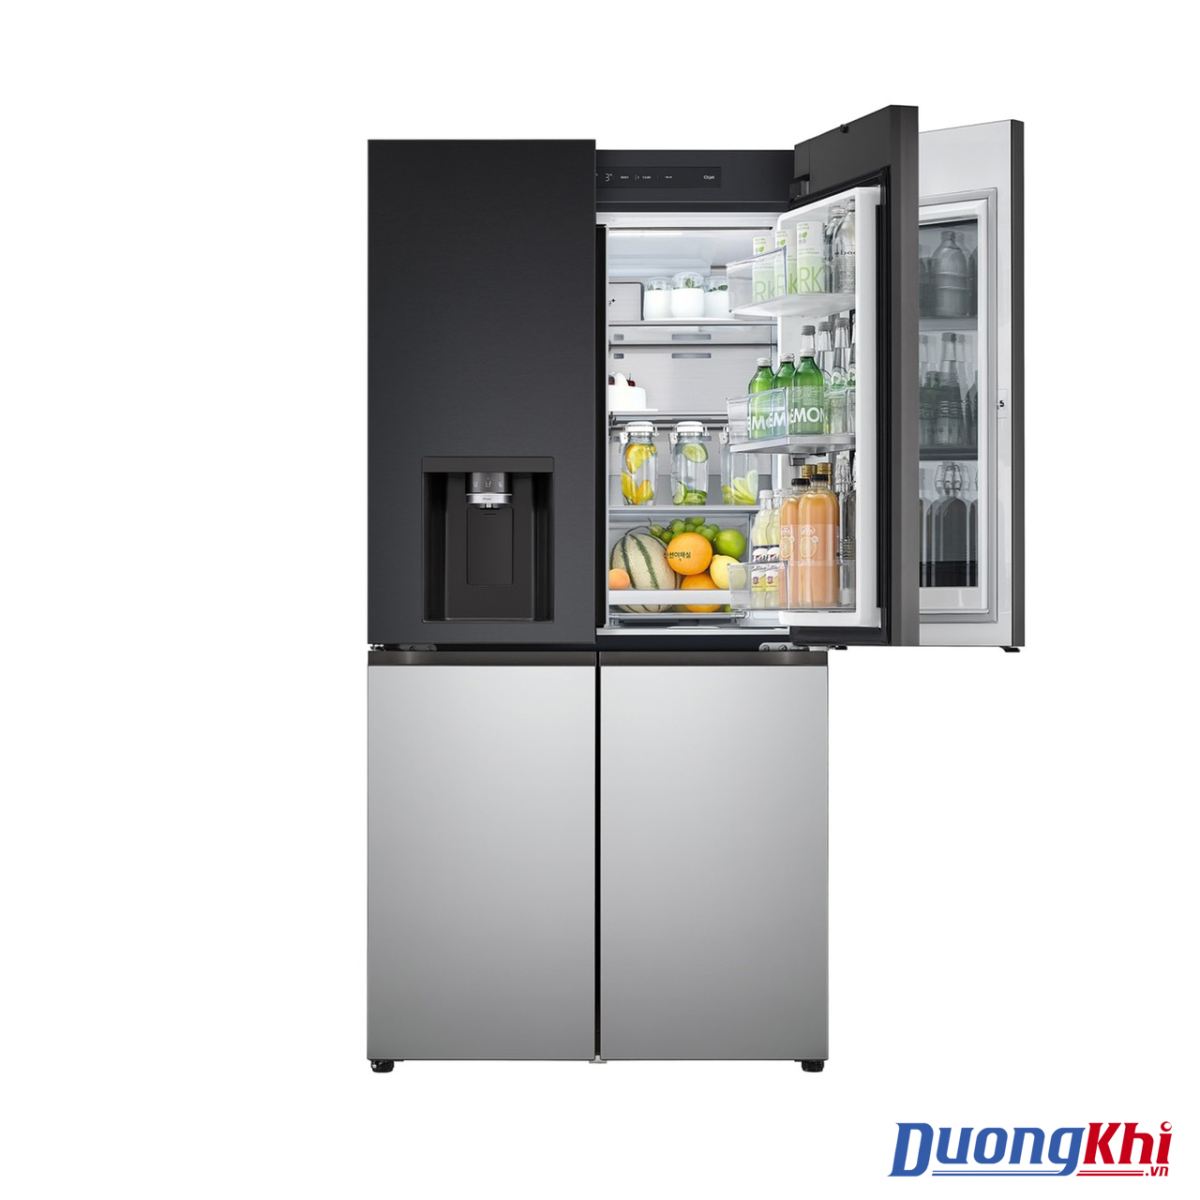 Tủ lạnh LG Dios Side by side màu đen - bạc 820L 6